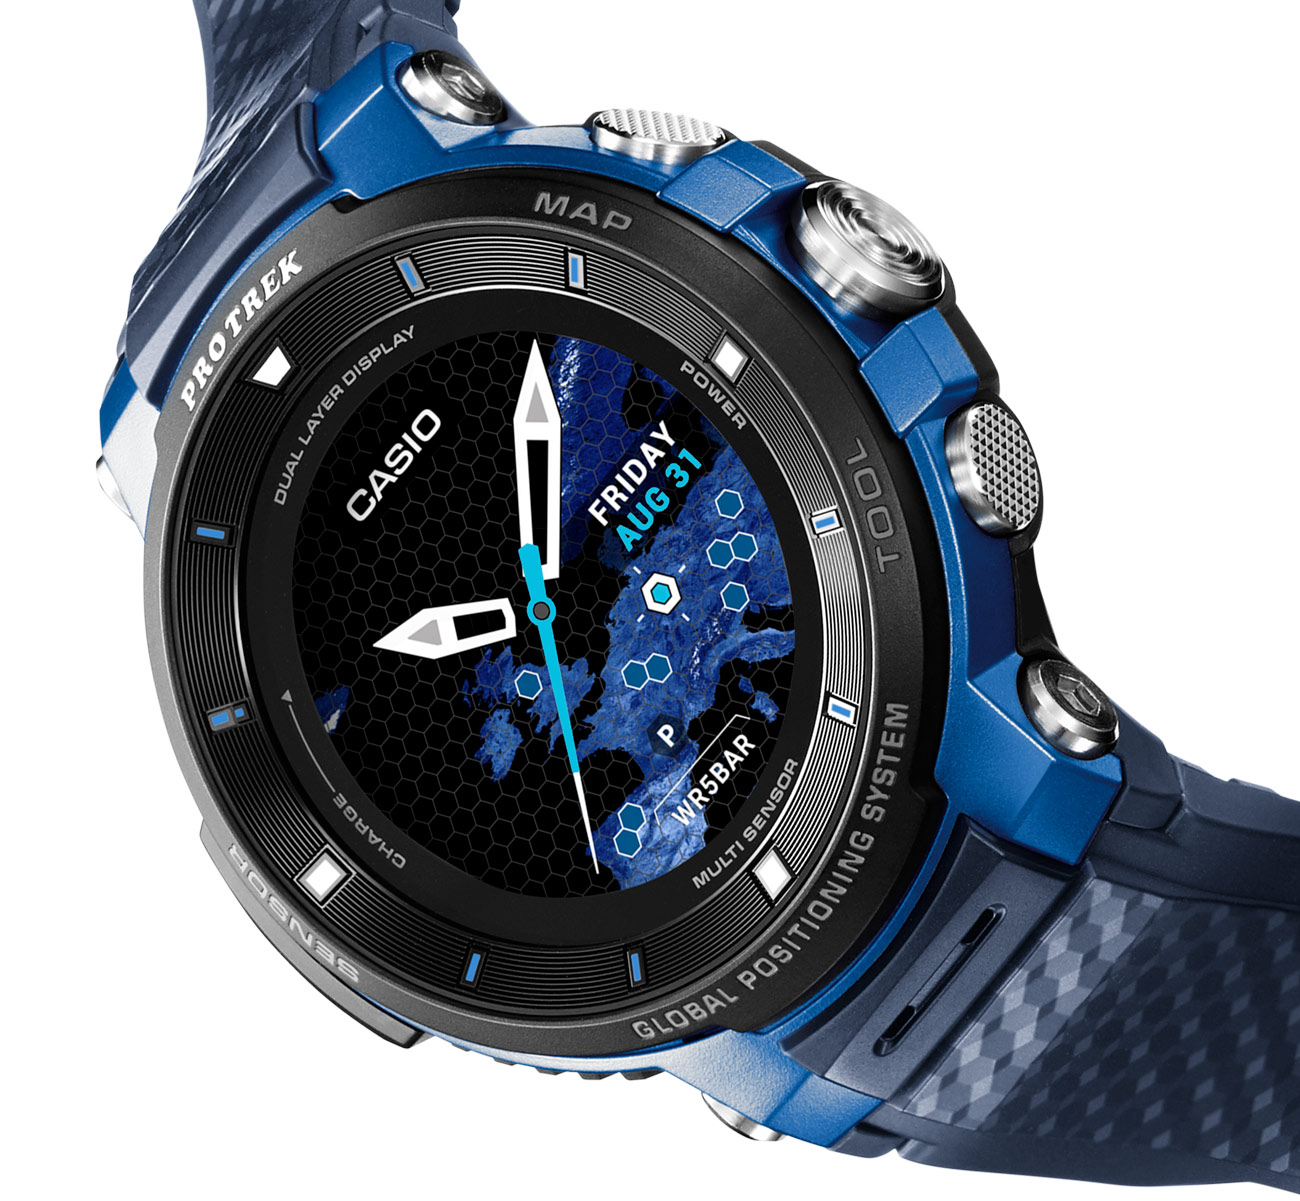 Casio Protrek Smart WSD-F30 Watch Now Has More Wearable Size